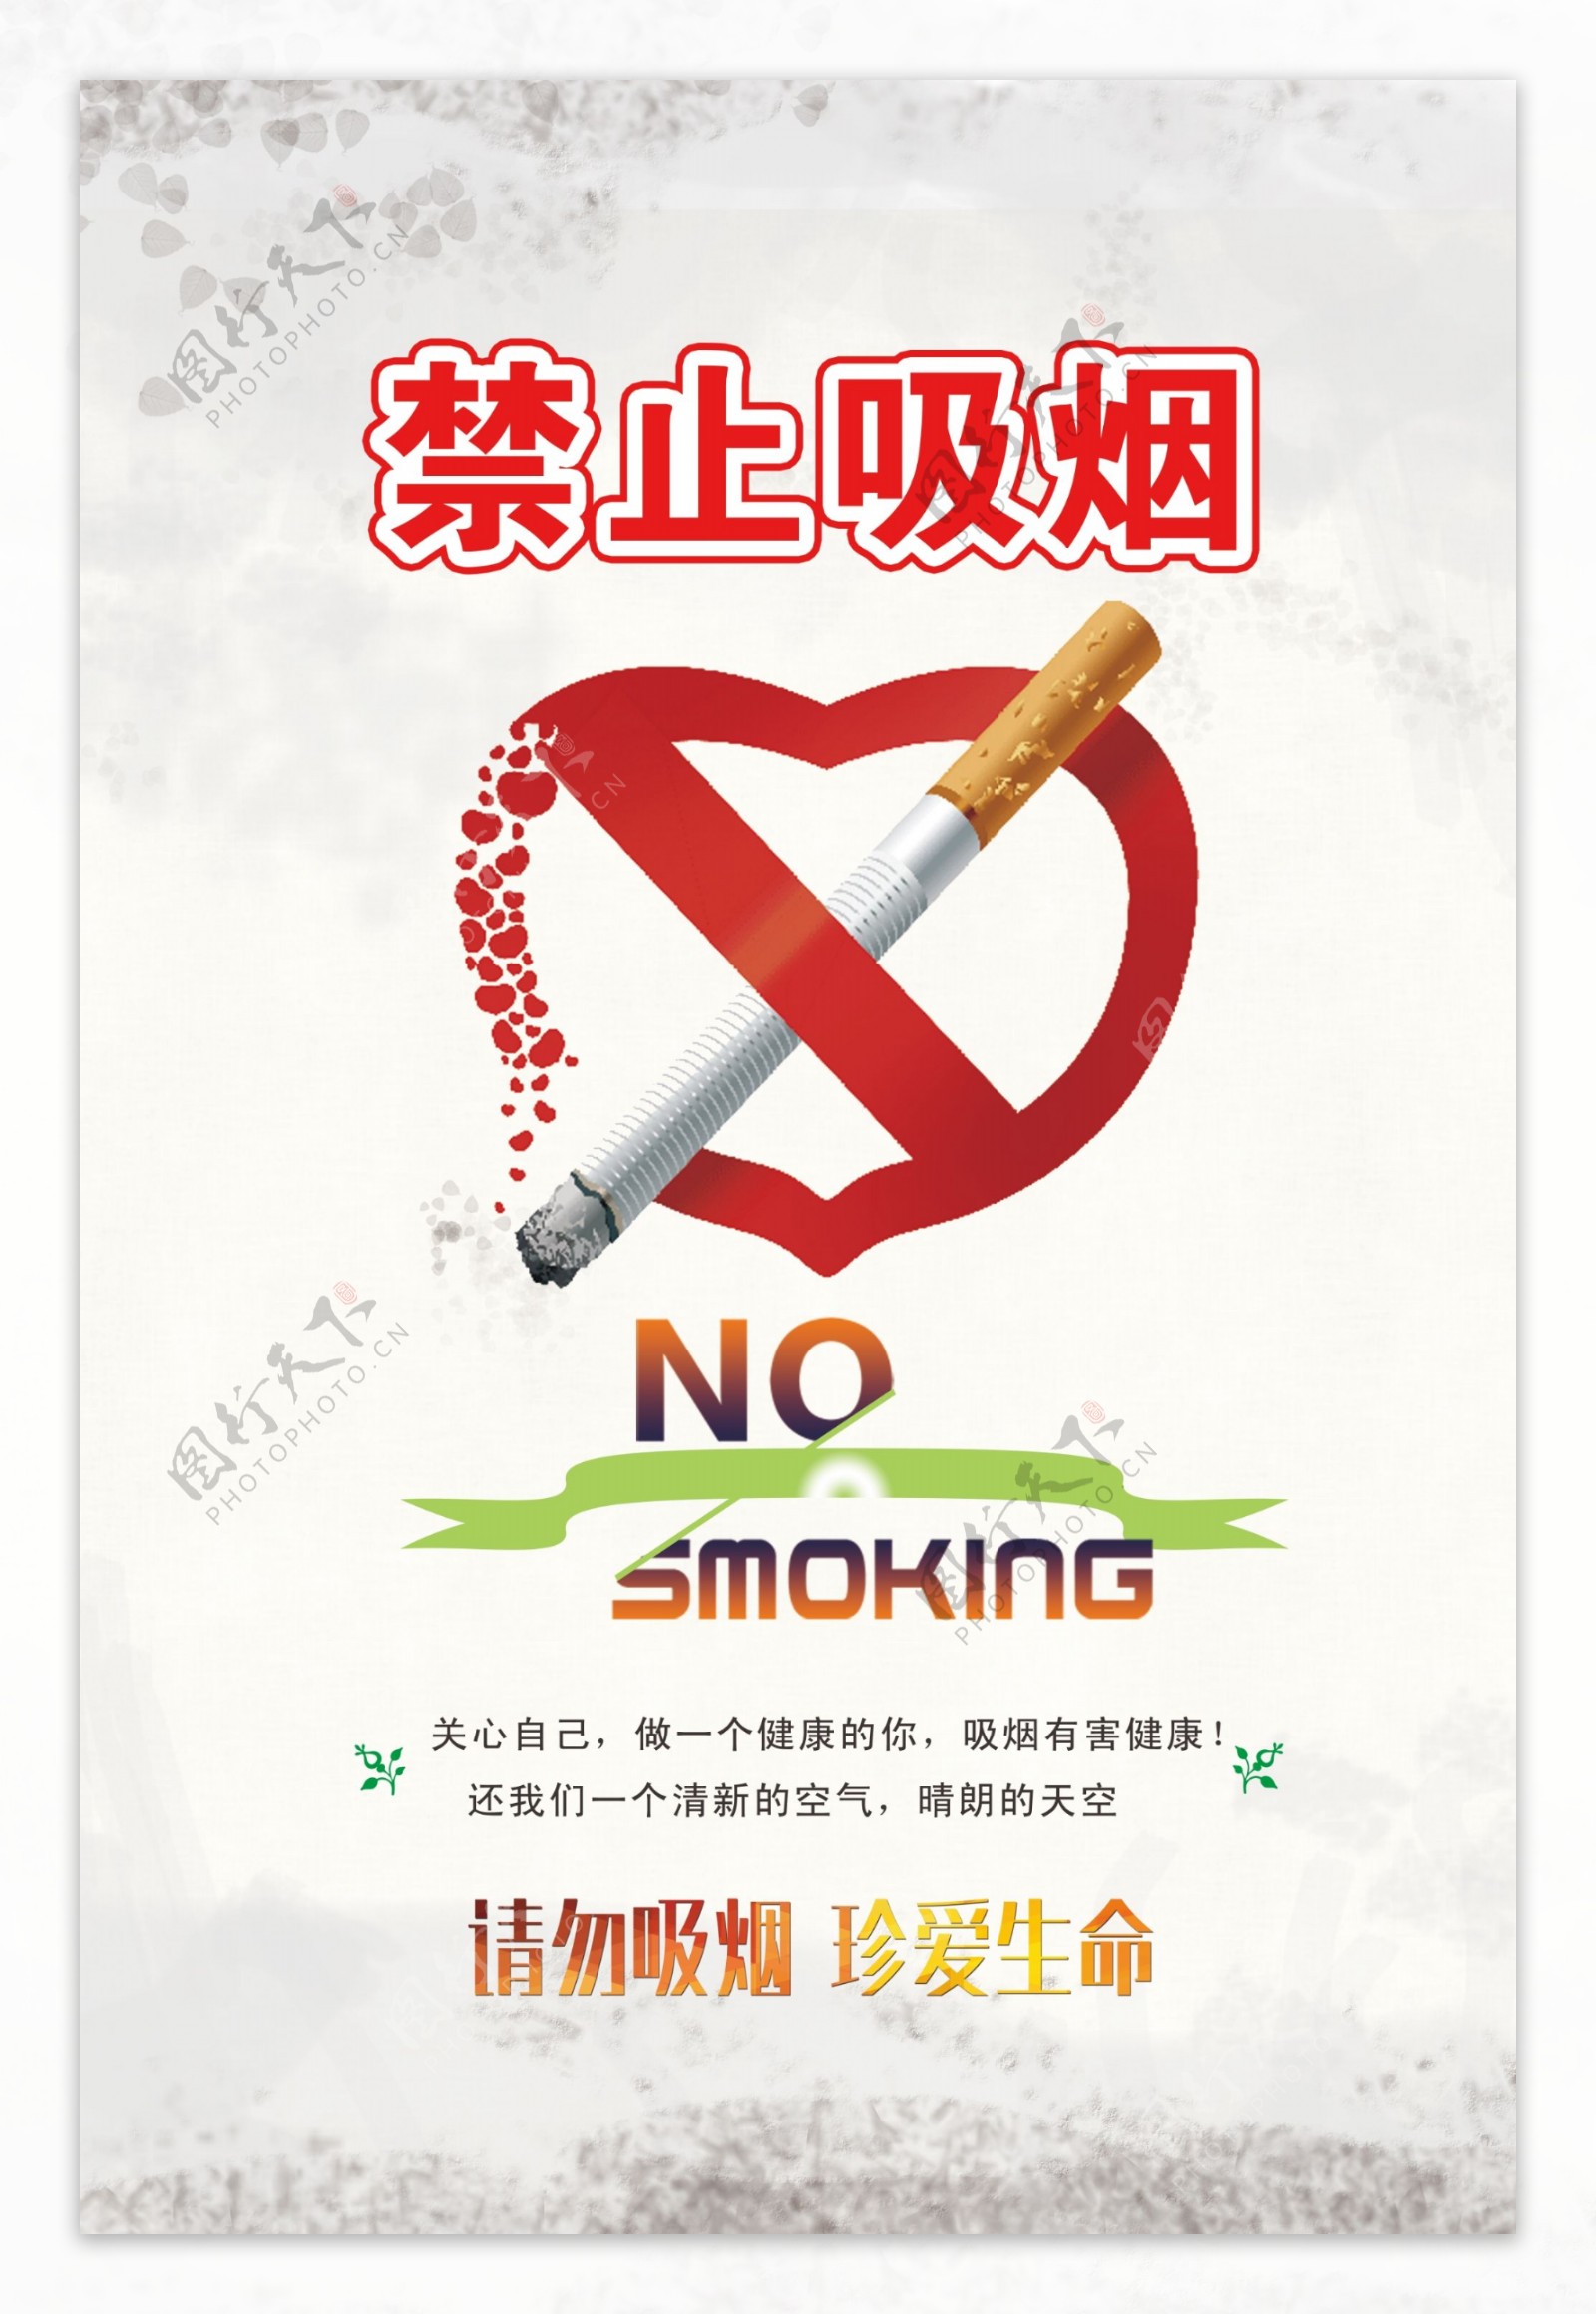 禁止吸烟社会公益健康危害宣传